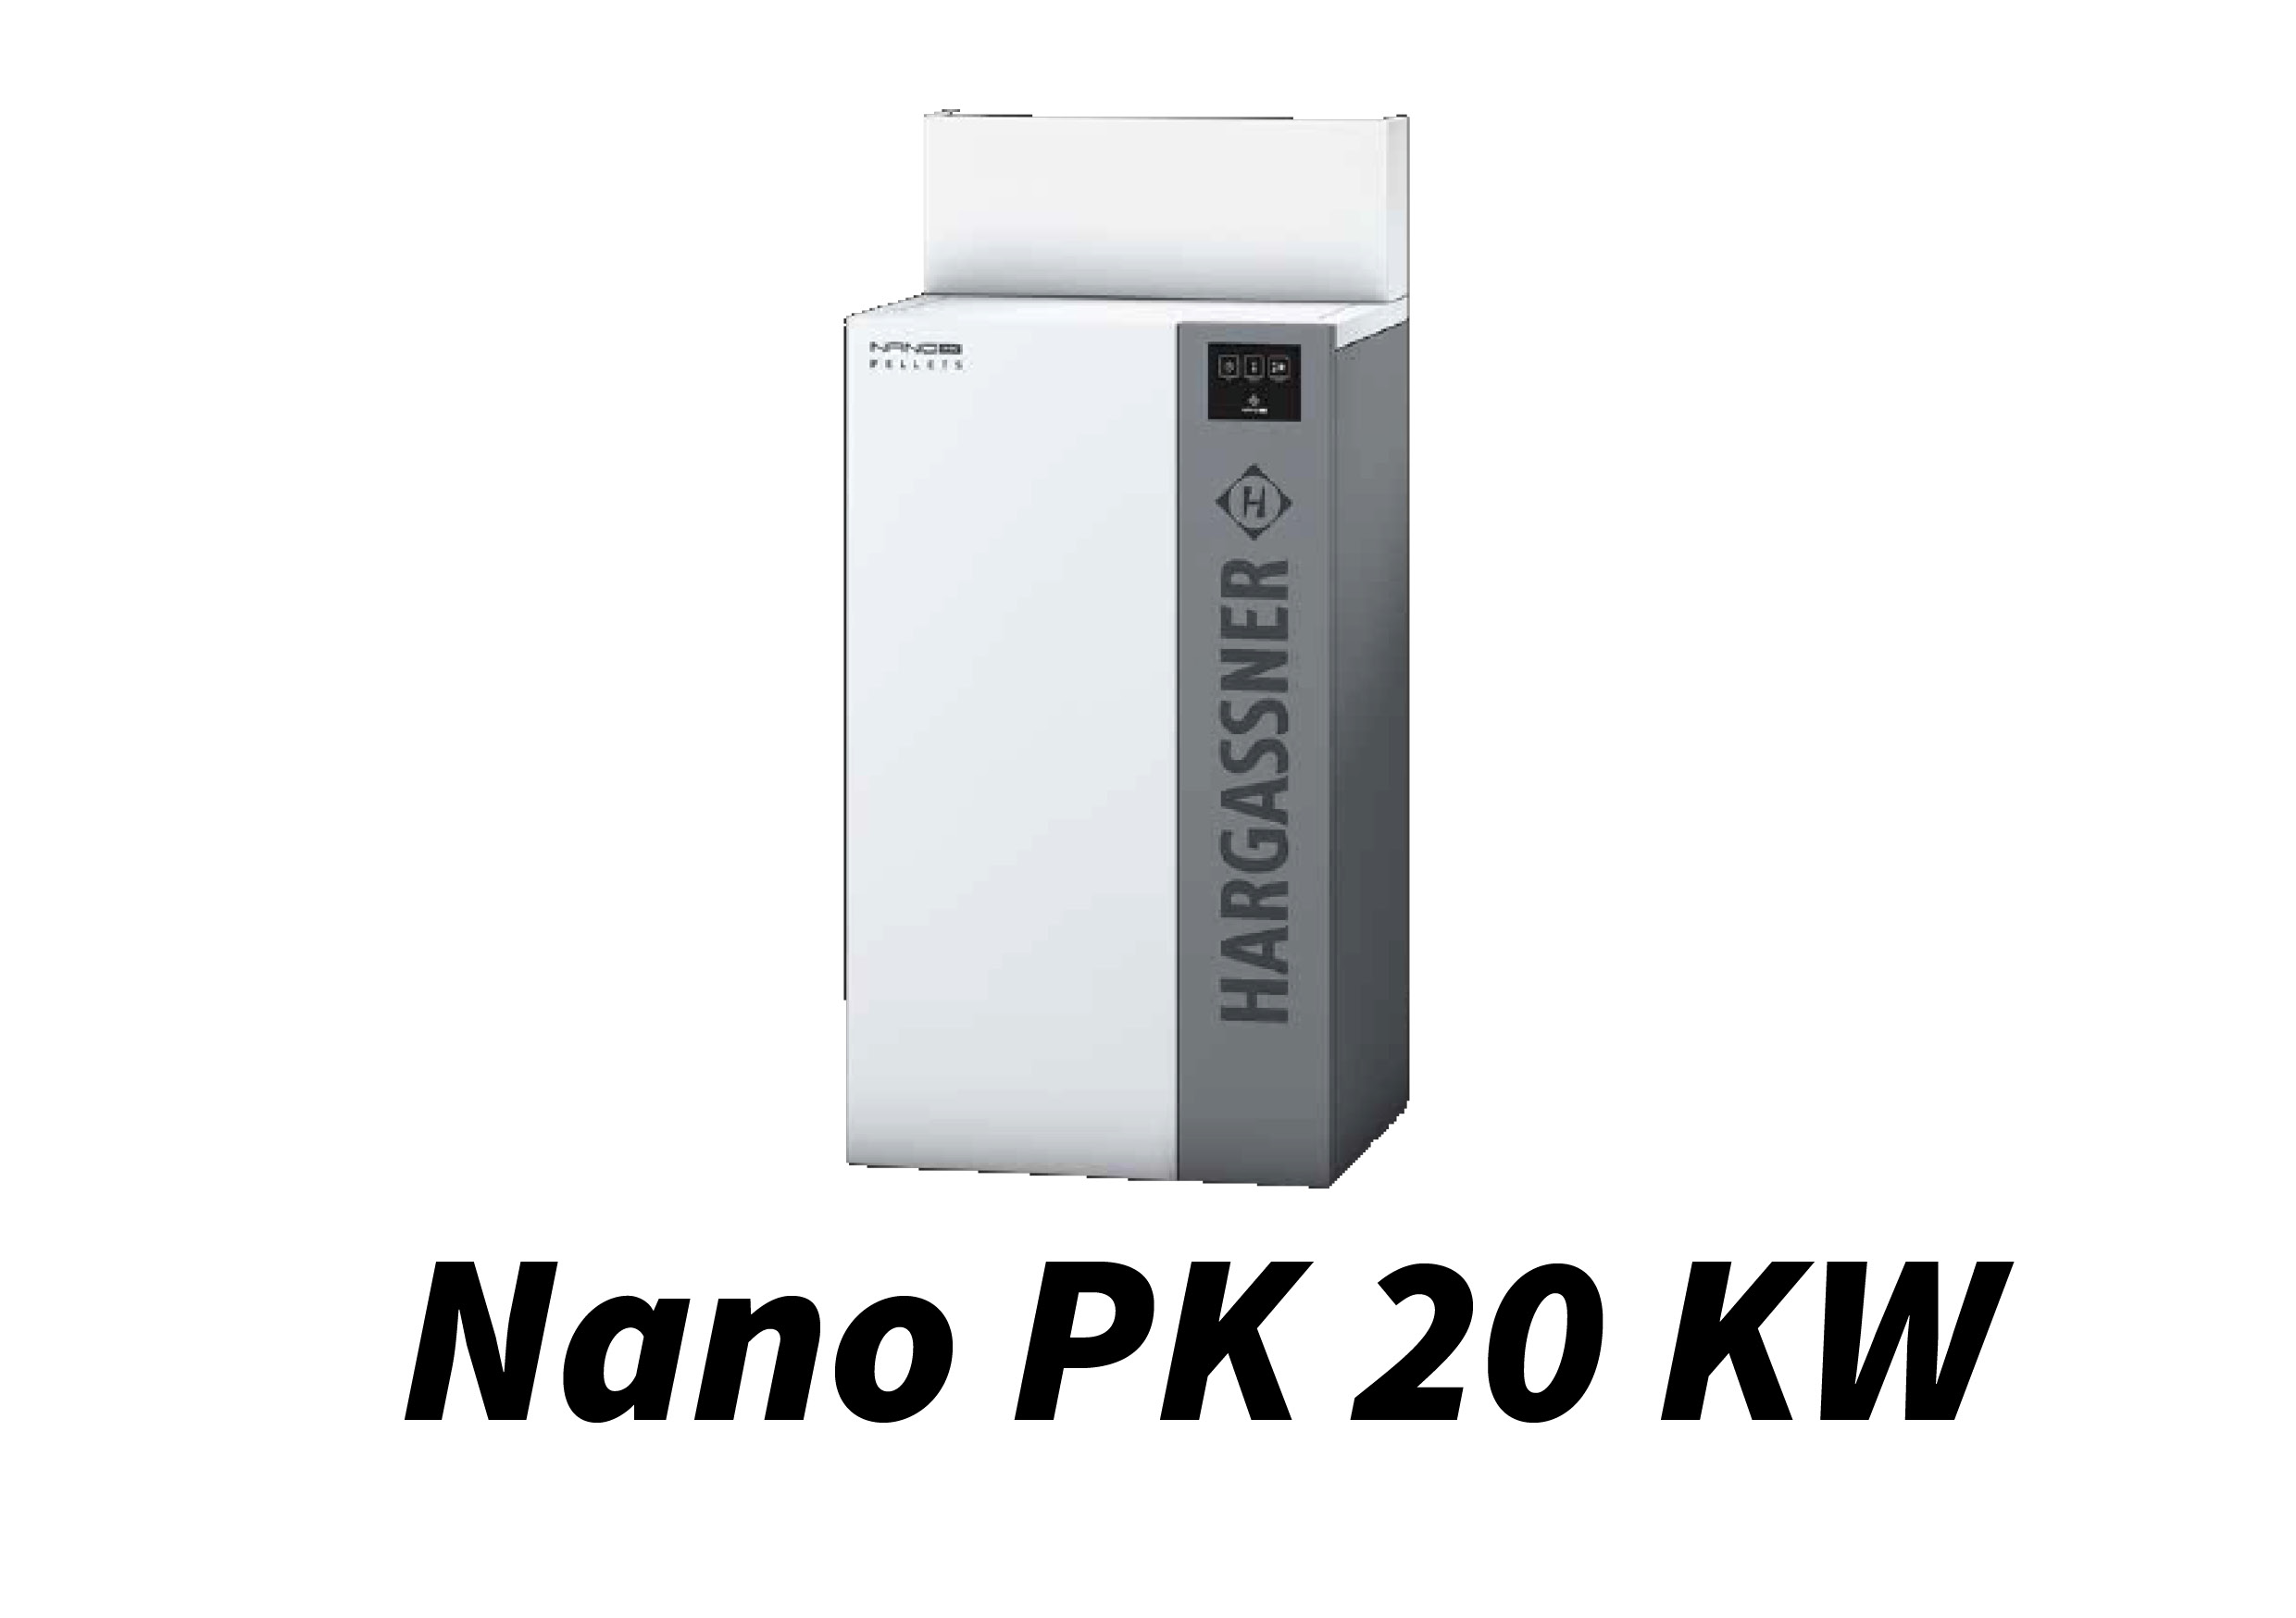 Nano PK 20 kW